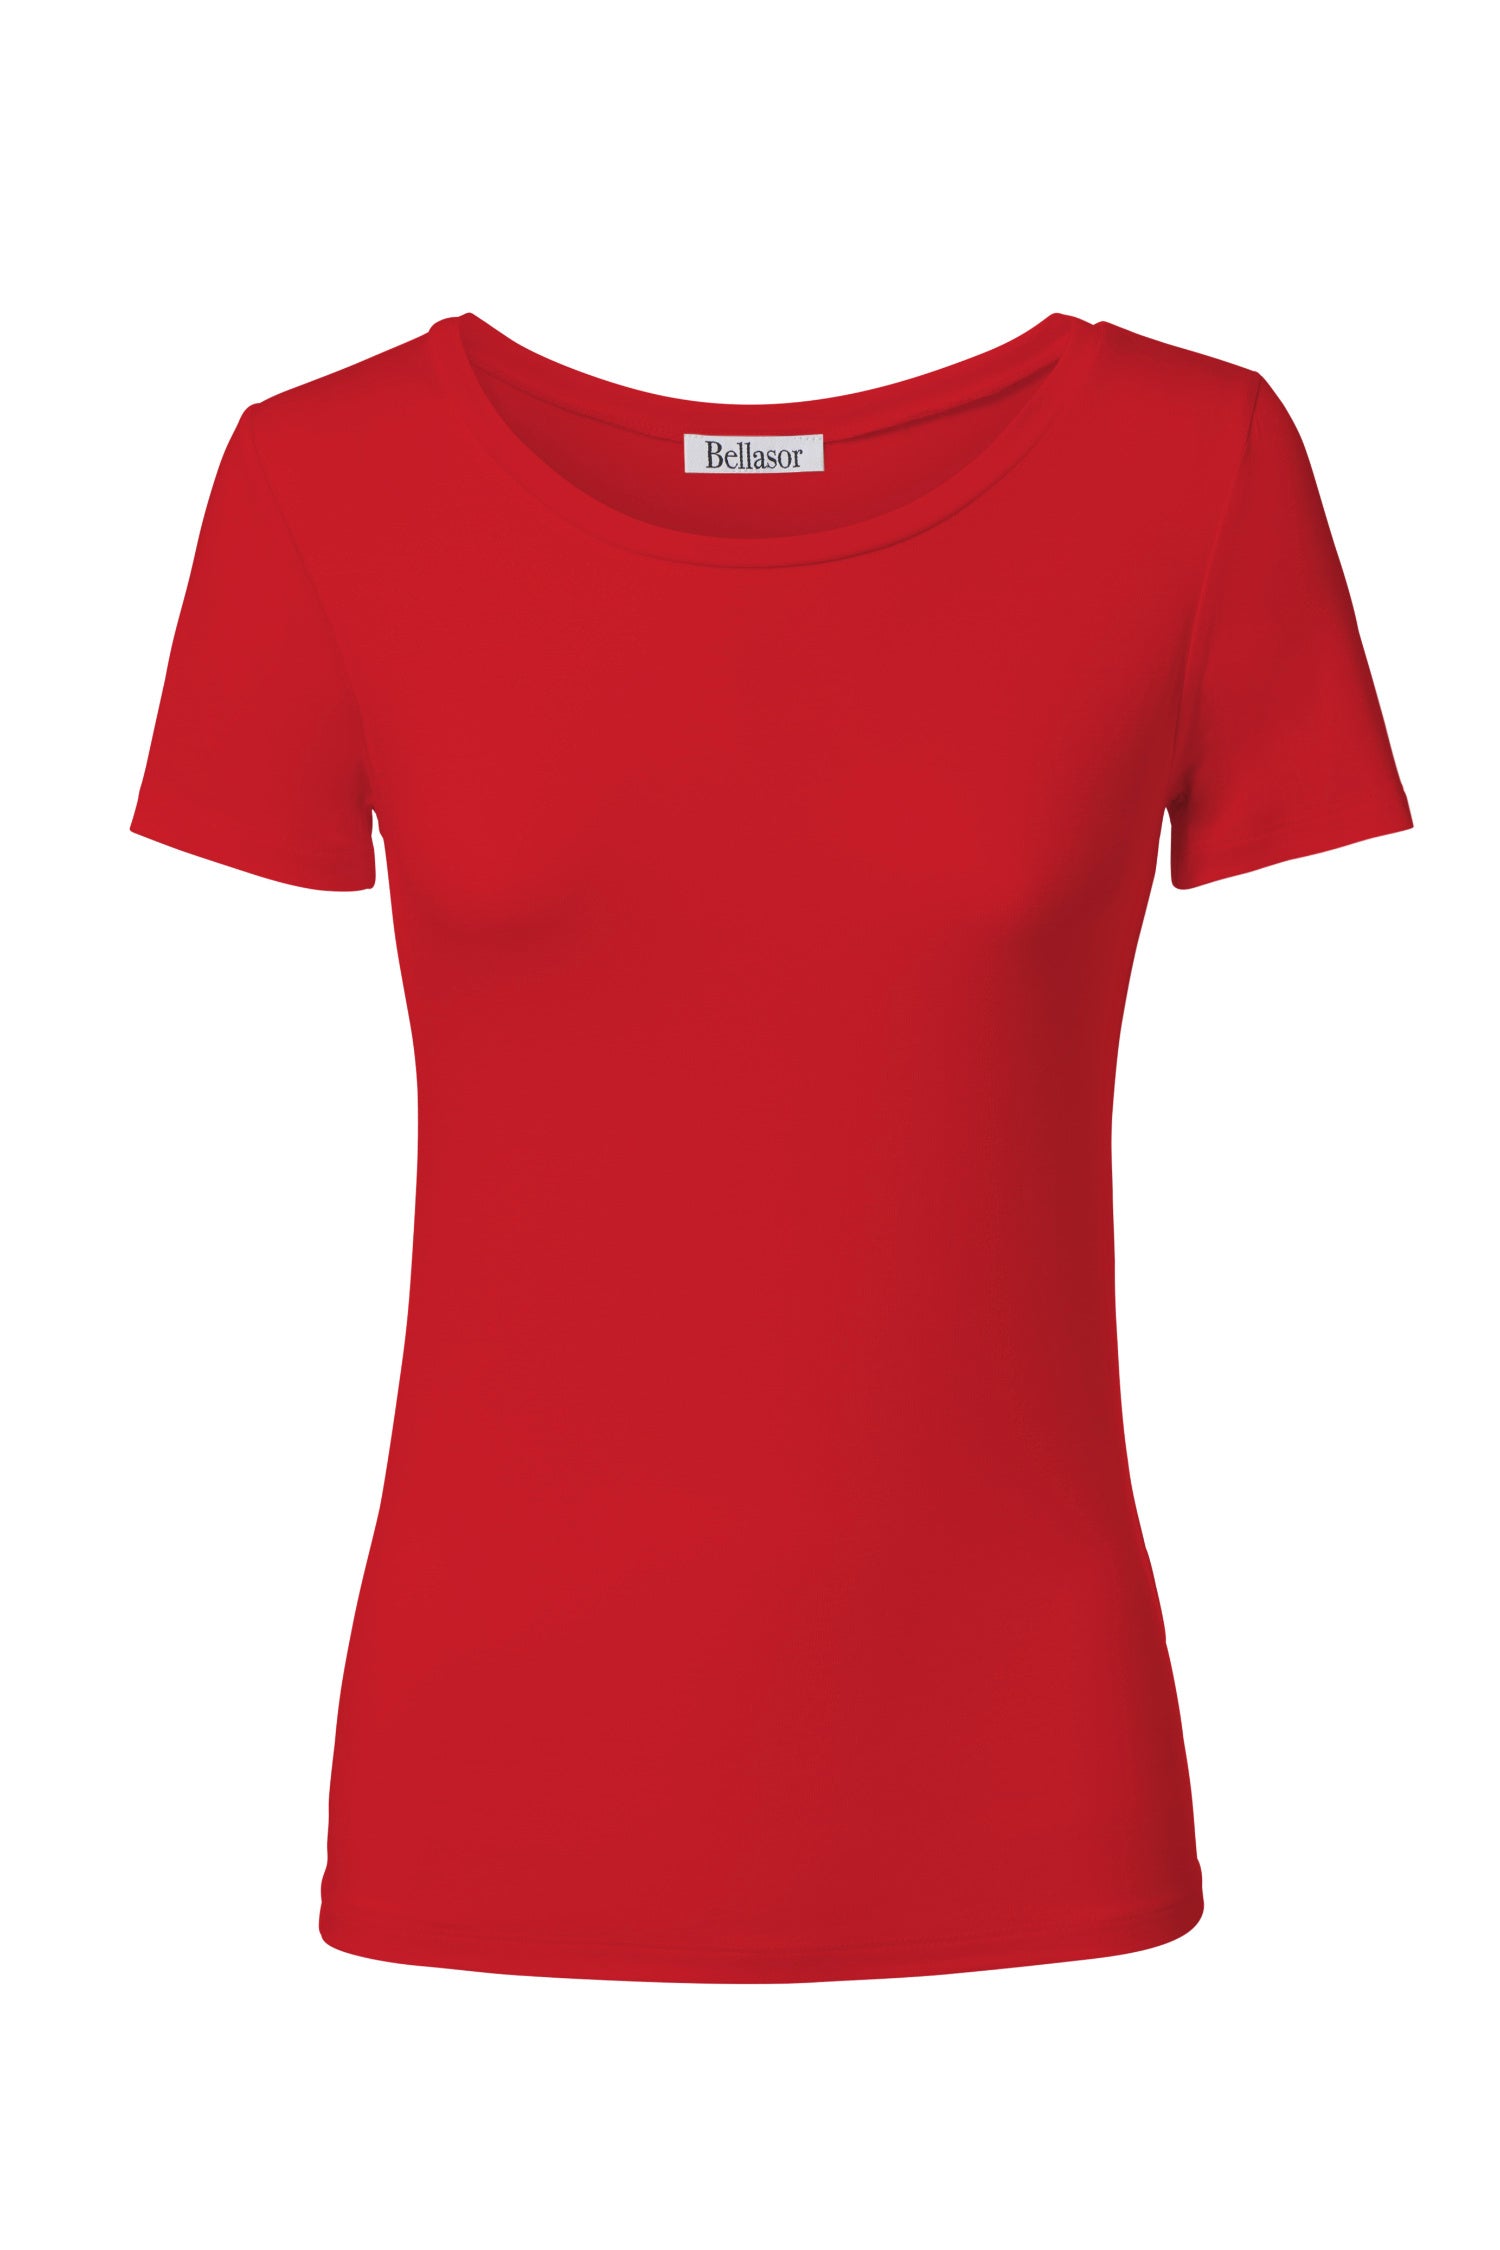 Rotes T-Shirt von Bellasor auf weißem Hintergrund.